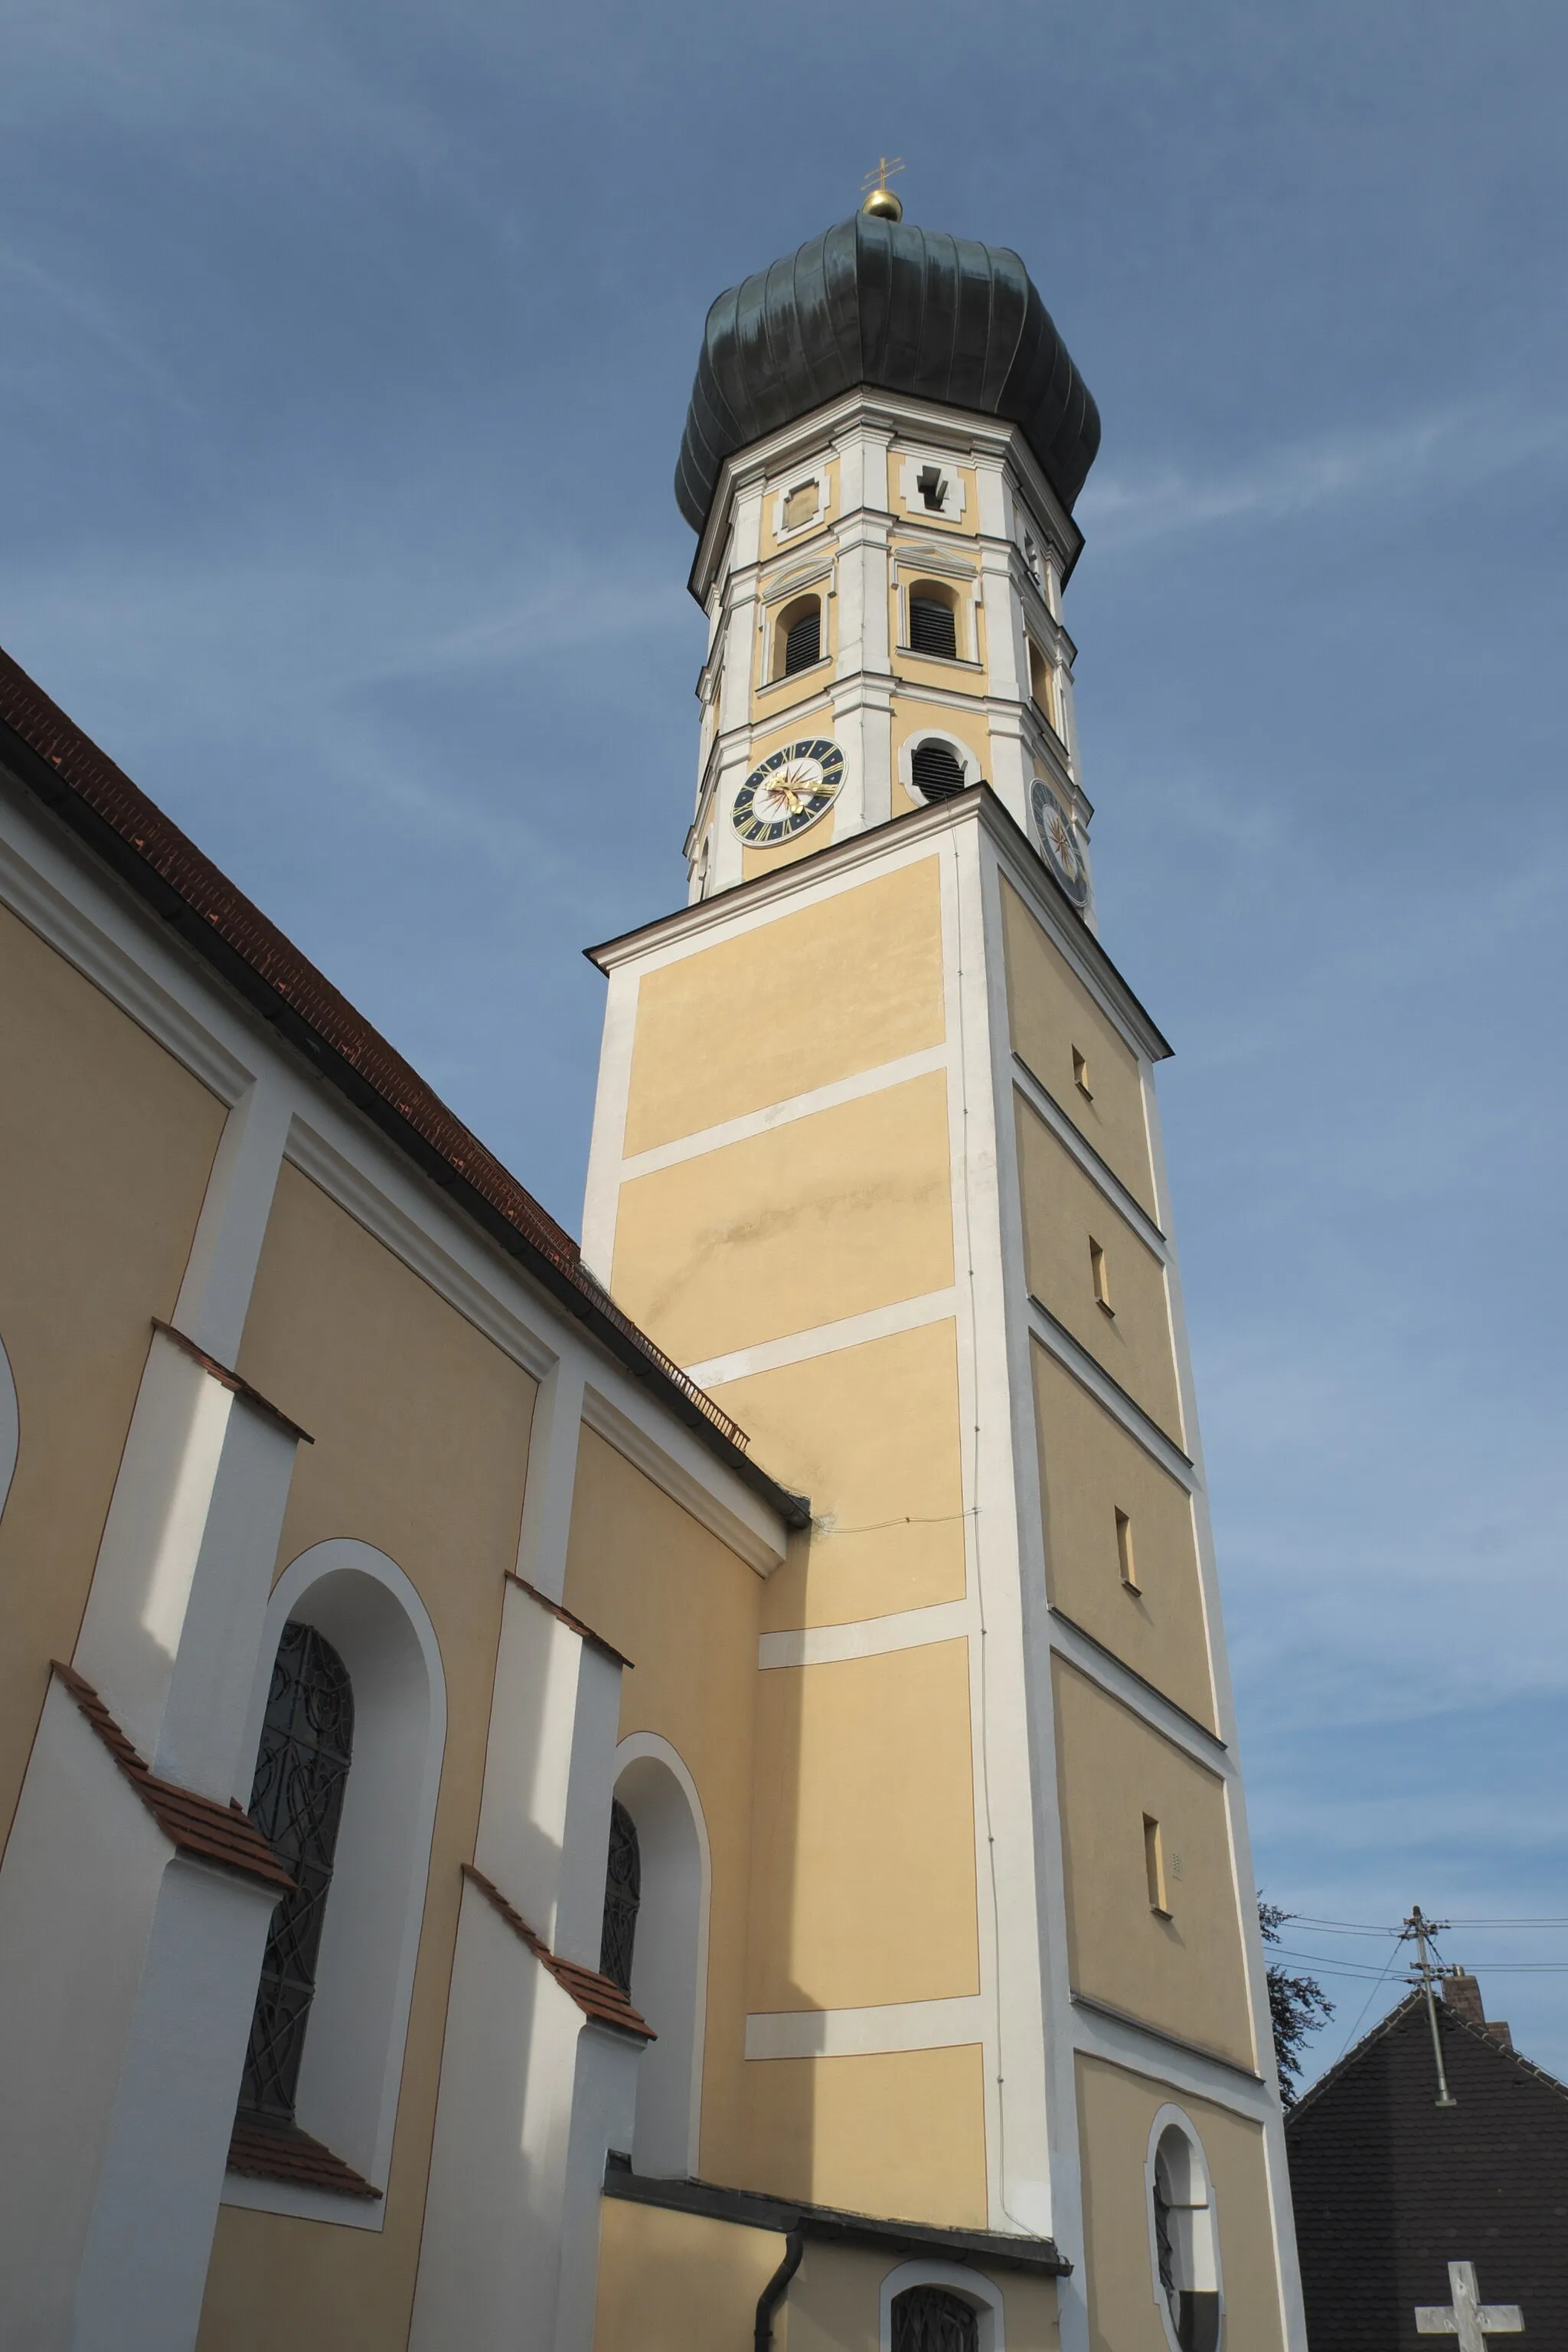 Photo showing: Katholische Pfarrkirche Mariä Himmelfahrt in Walleshausen, einem Ortsteil von Geltendorf im oberbayerischen Landkreis Landsberg am Lech (Bayern/Deutschland), Glockenturm mit Zwiebelhaube